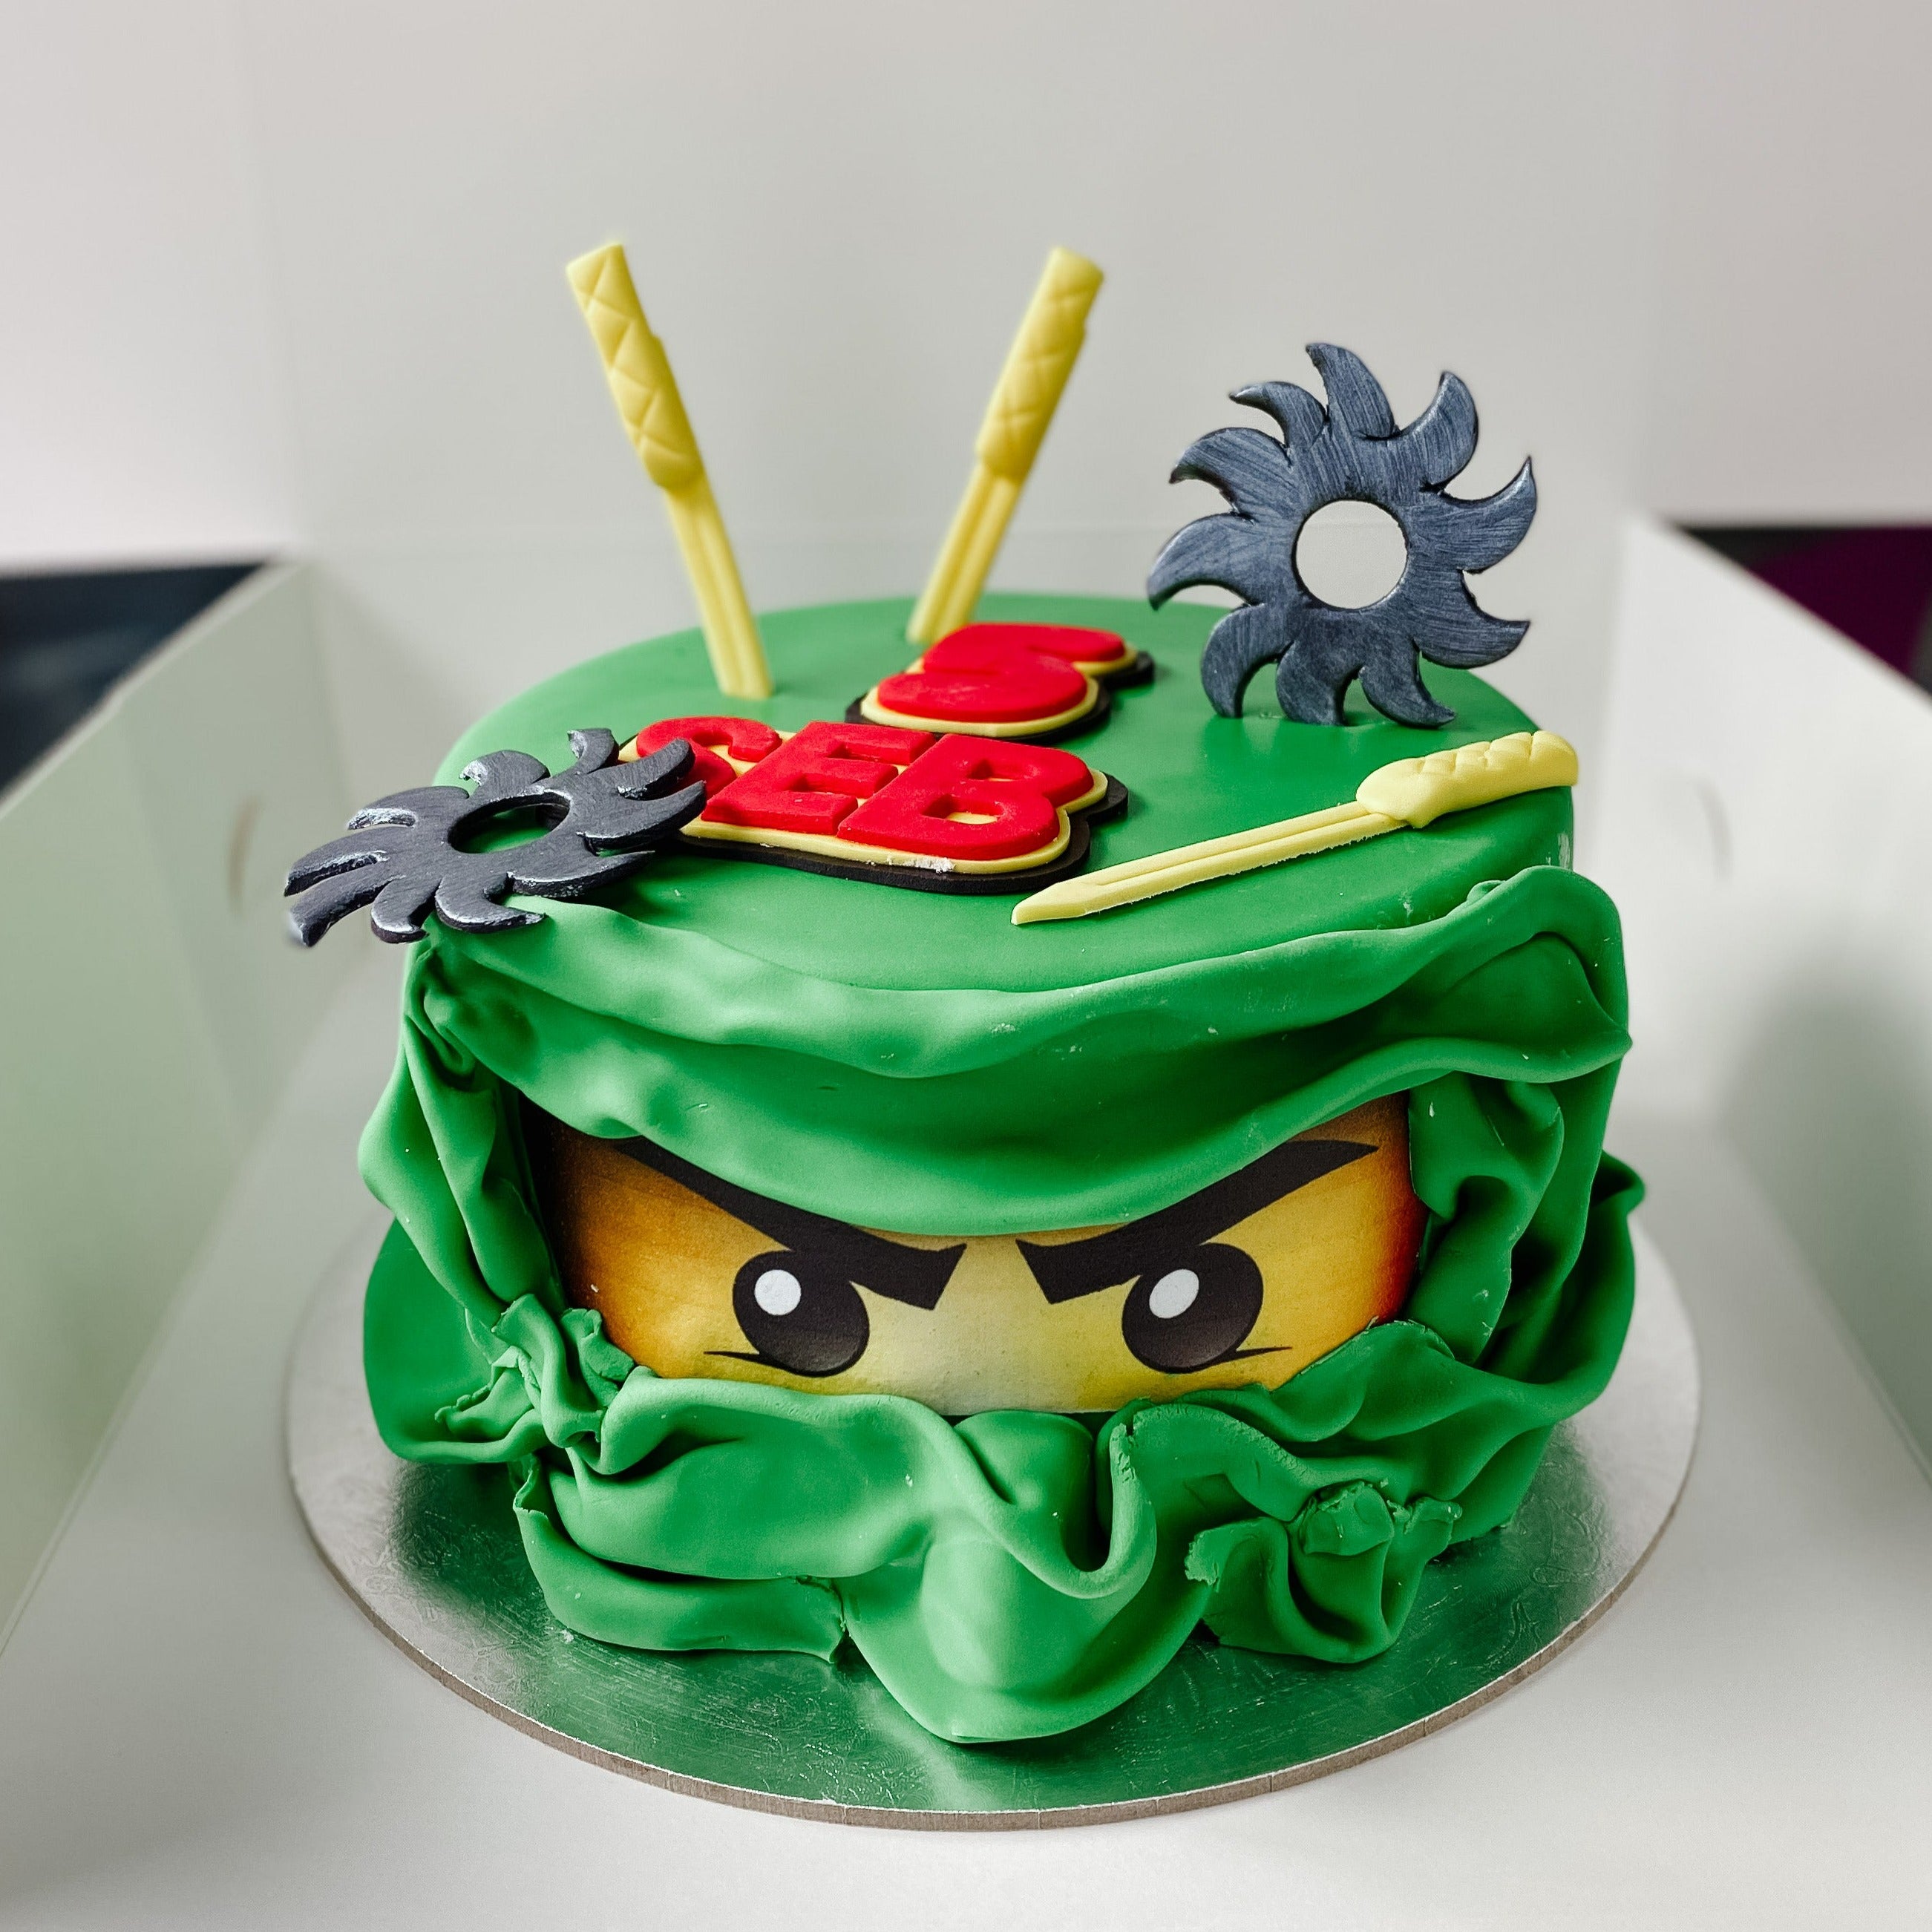 Dinosaur Birthday Cakes | Celebrate with a Dino Cake